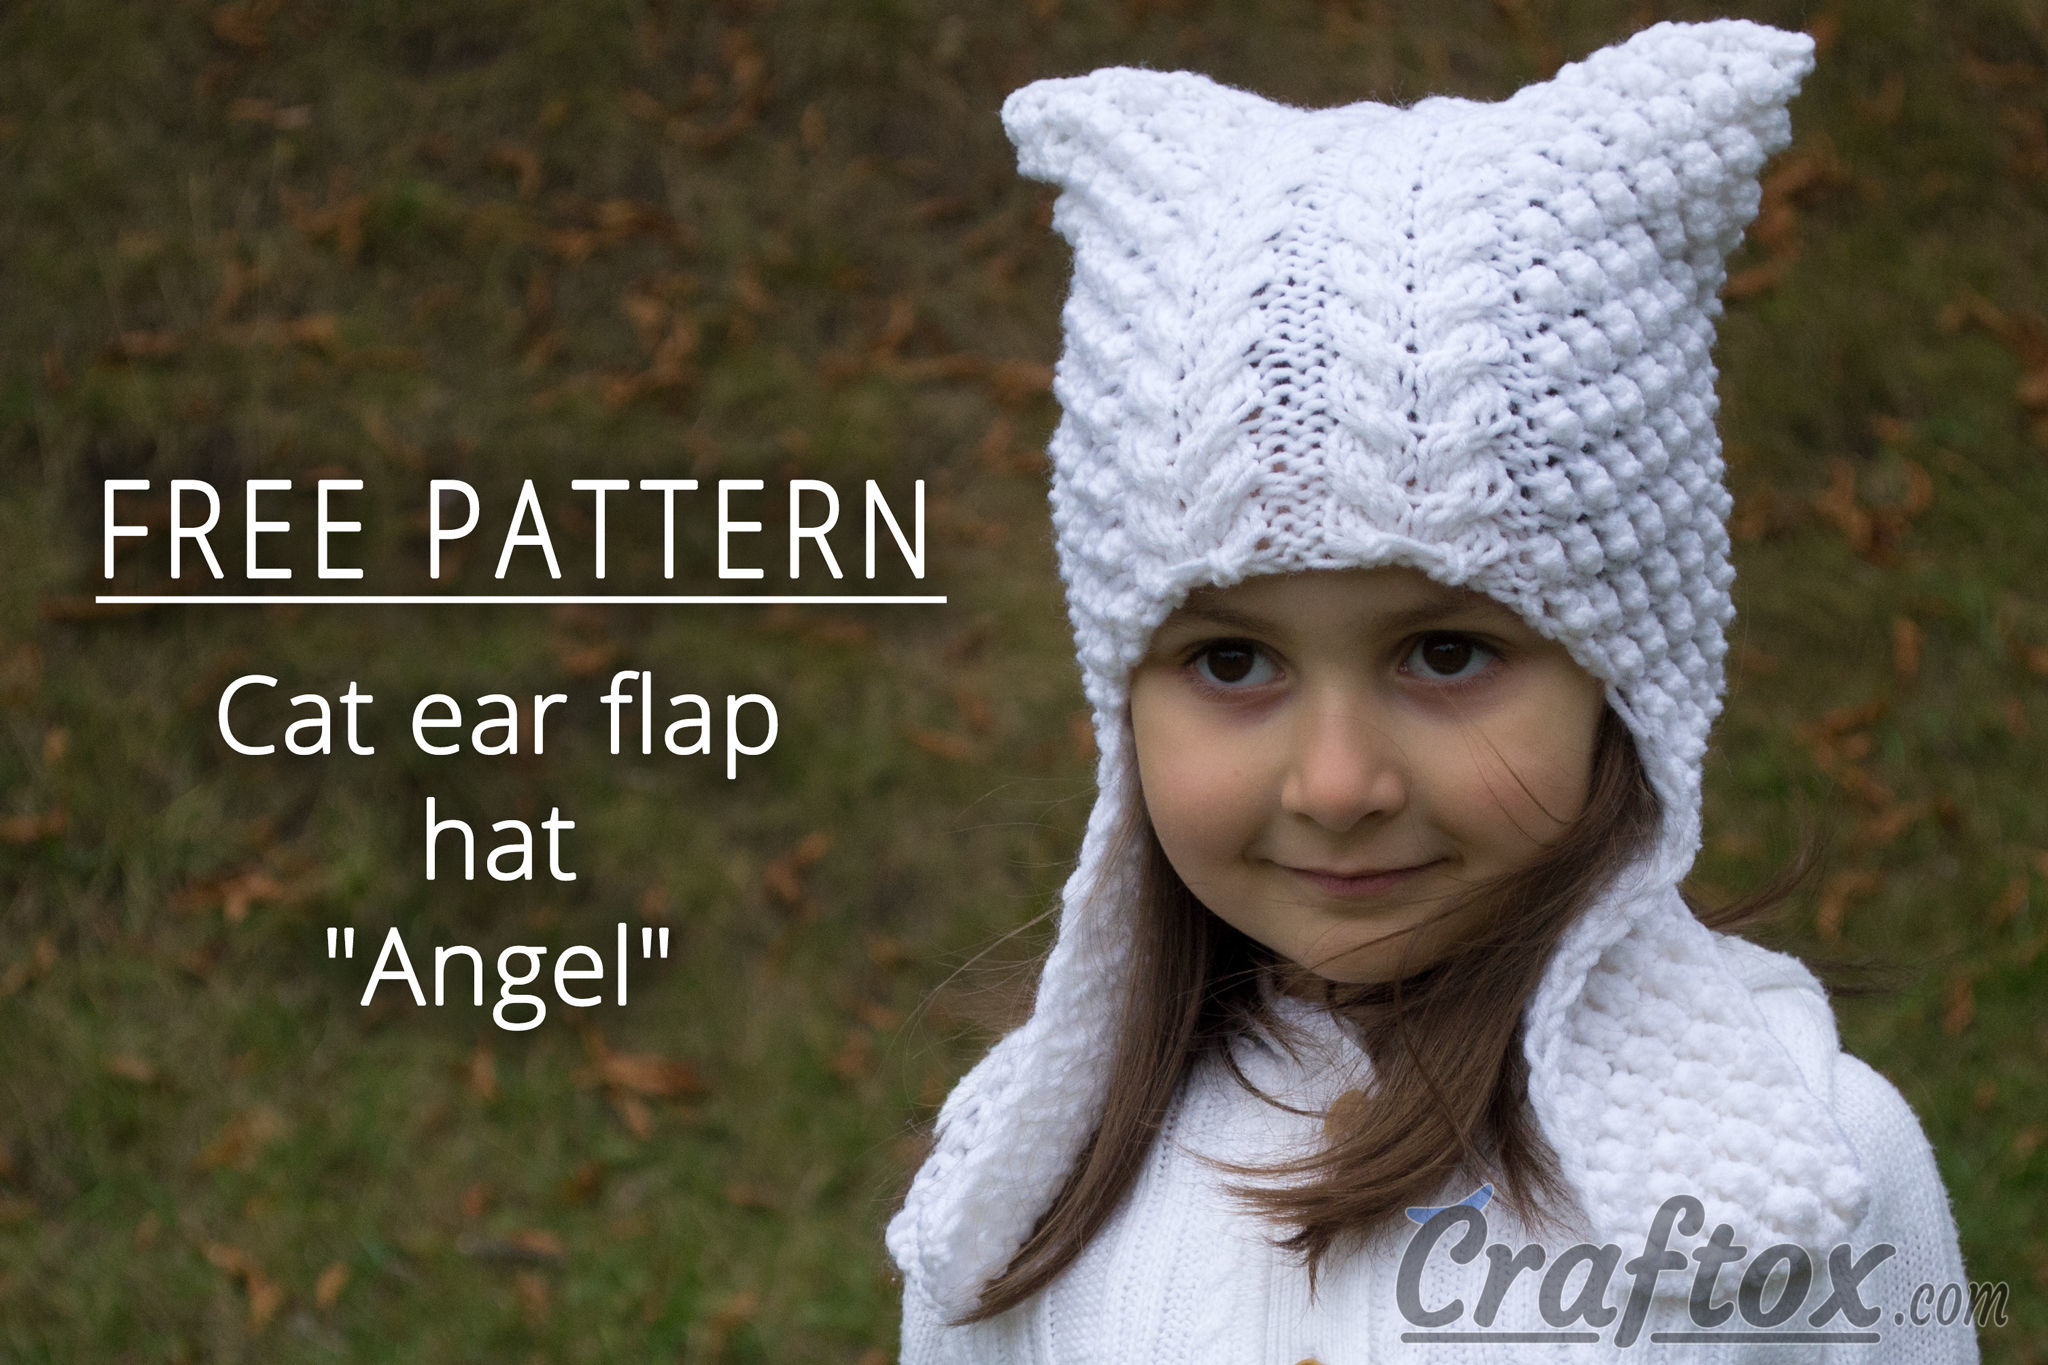 Cat ear flap hat "Angel" free knitting pattern